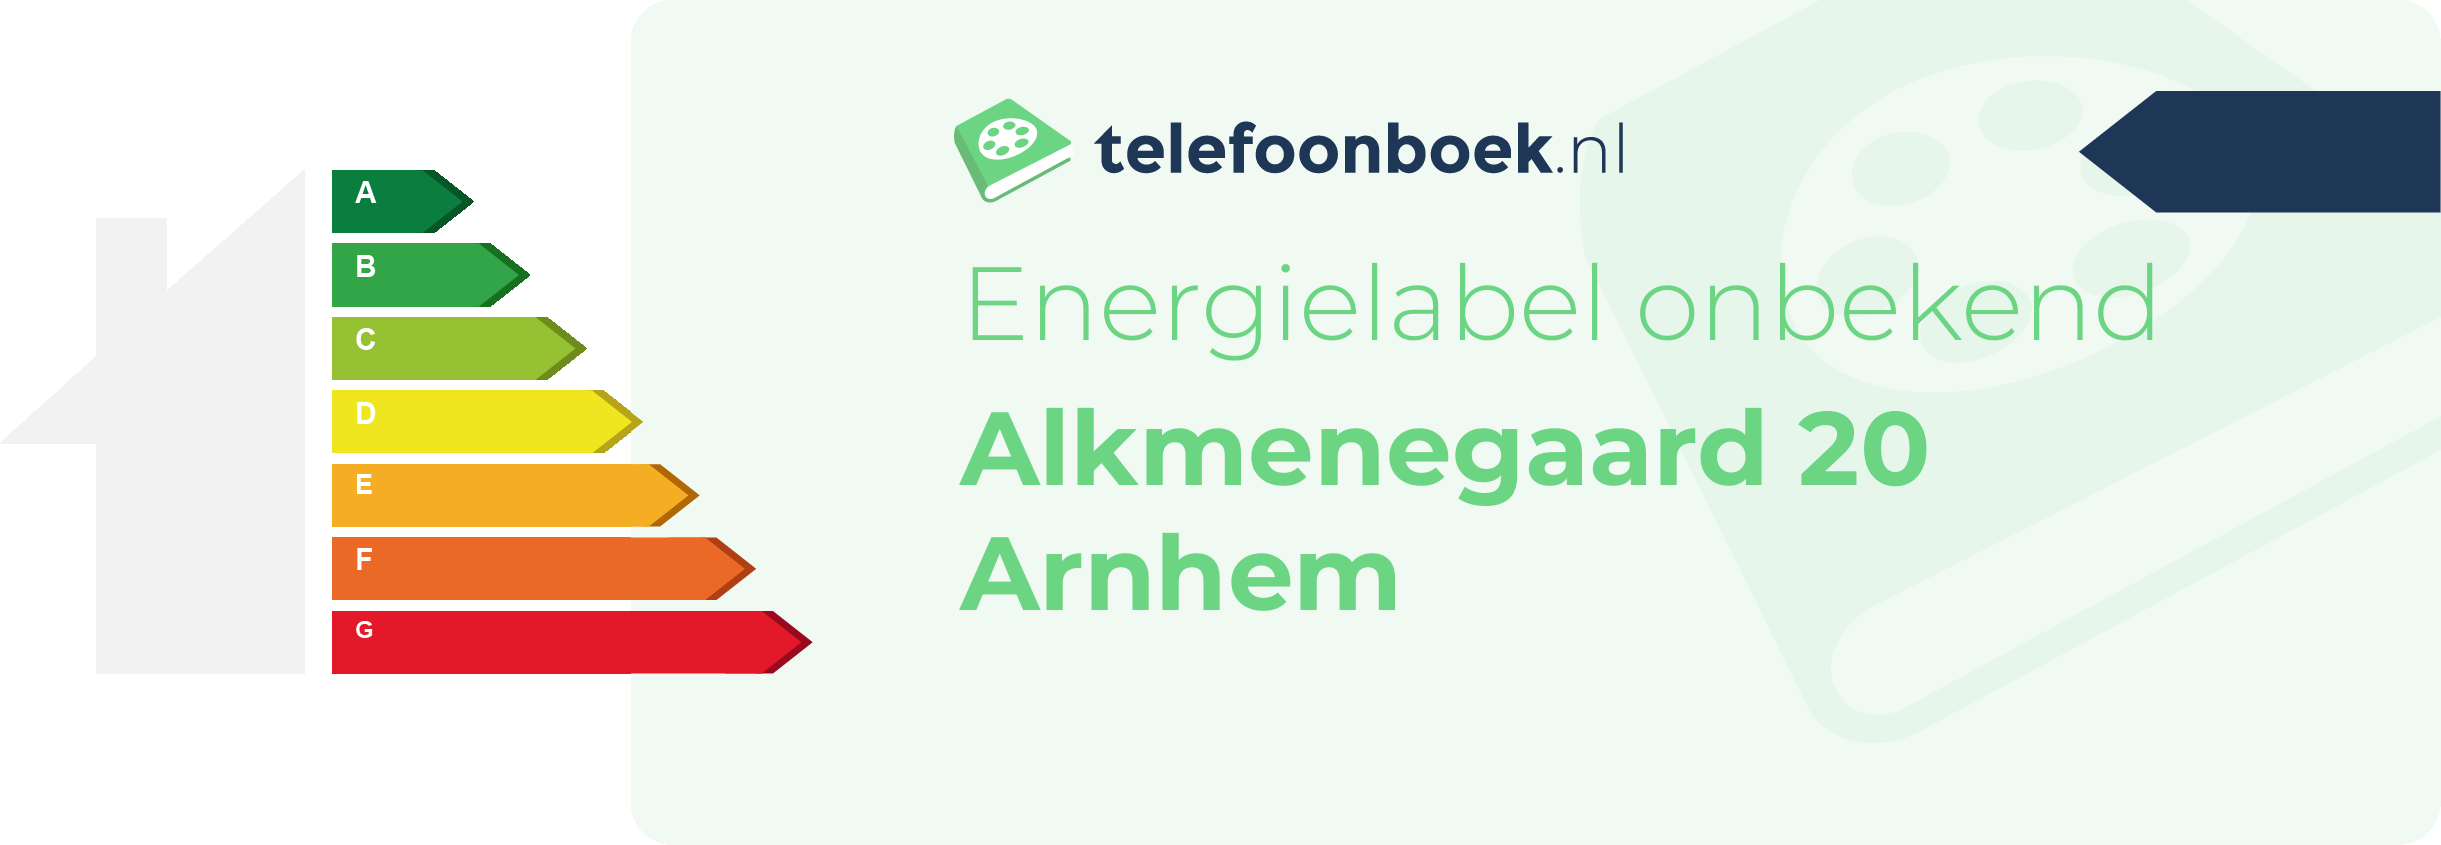 Energielabel Alkmenegaard 20 Arnhem